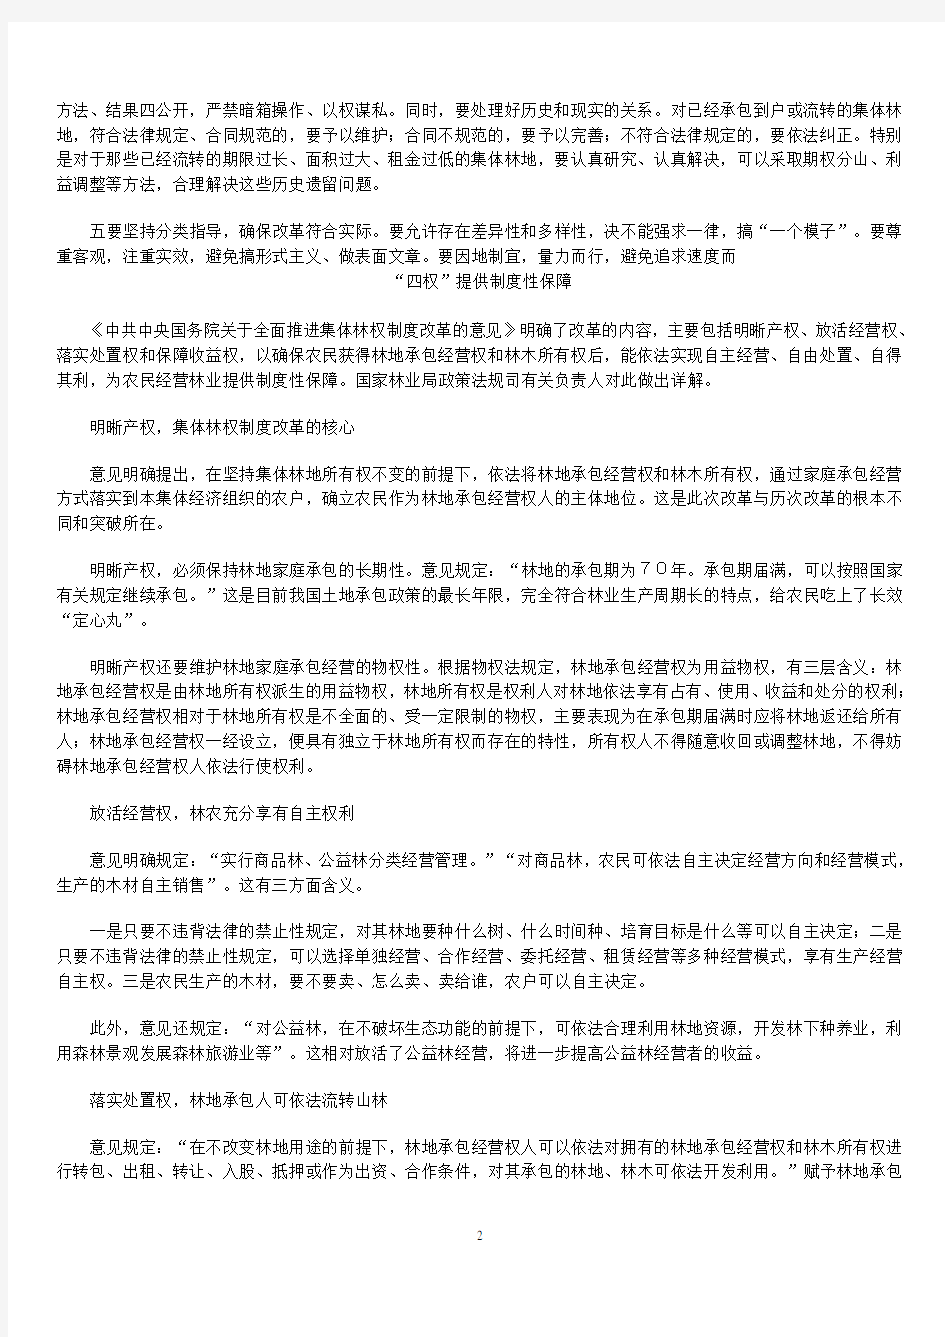 中共中央国务院关于全面推进集体林权制度改革的意见